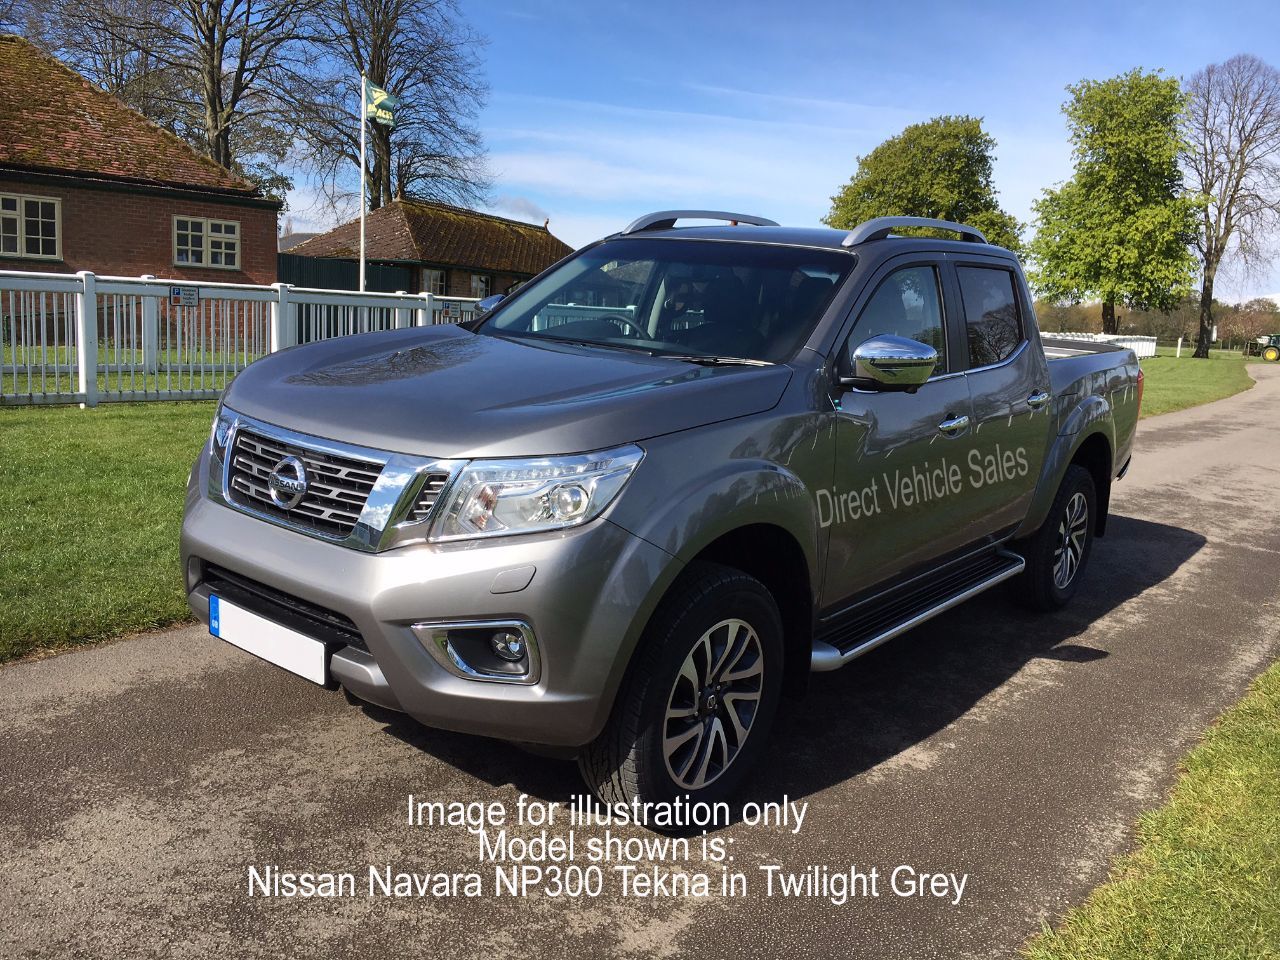 Nissan dealer north yorkshire #2